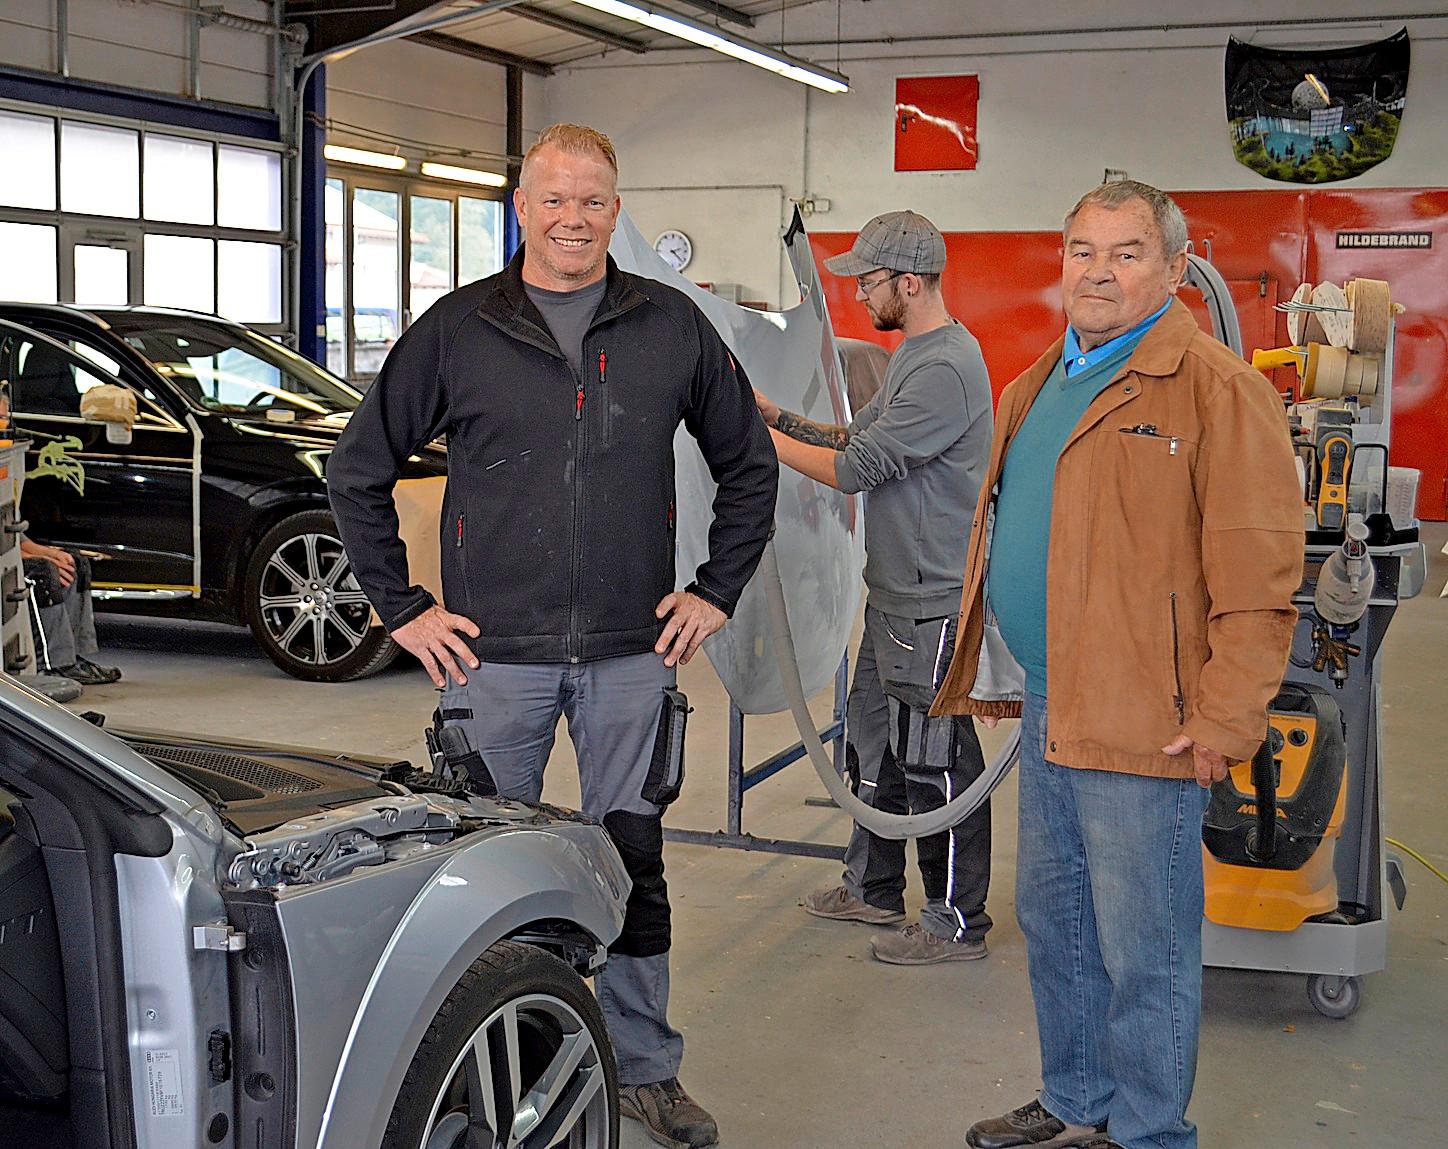 Firmenchef Thomas Becherer und sein Vater Eberhard Becherer in der ersten Werkhalle, in der Pkw-Teile ersetzt und nach dem Spritzen und Trocknen wieder eingebaut werden.